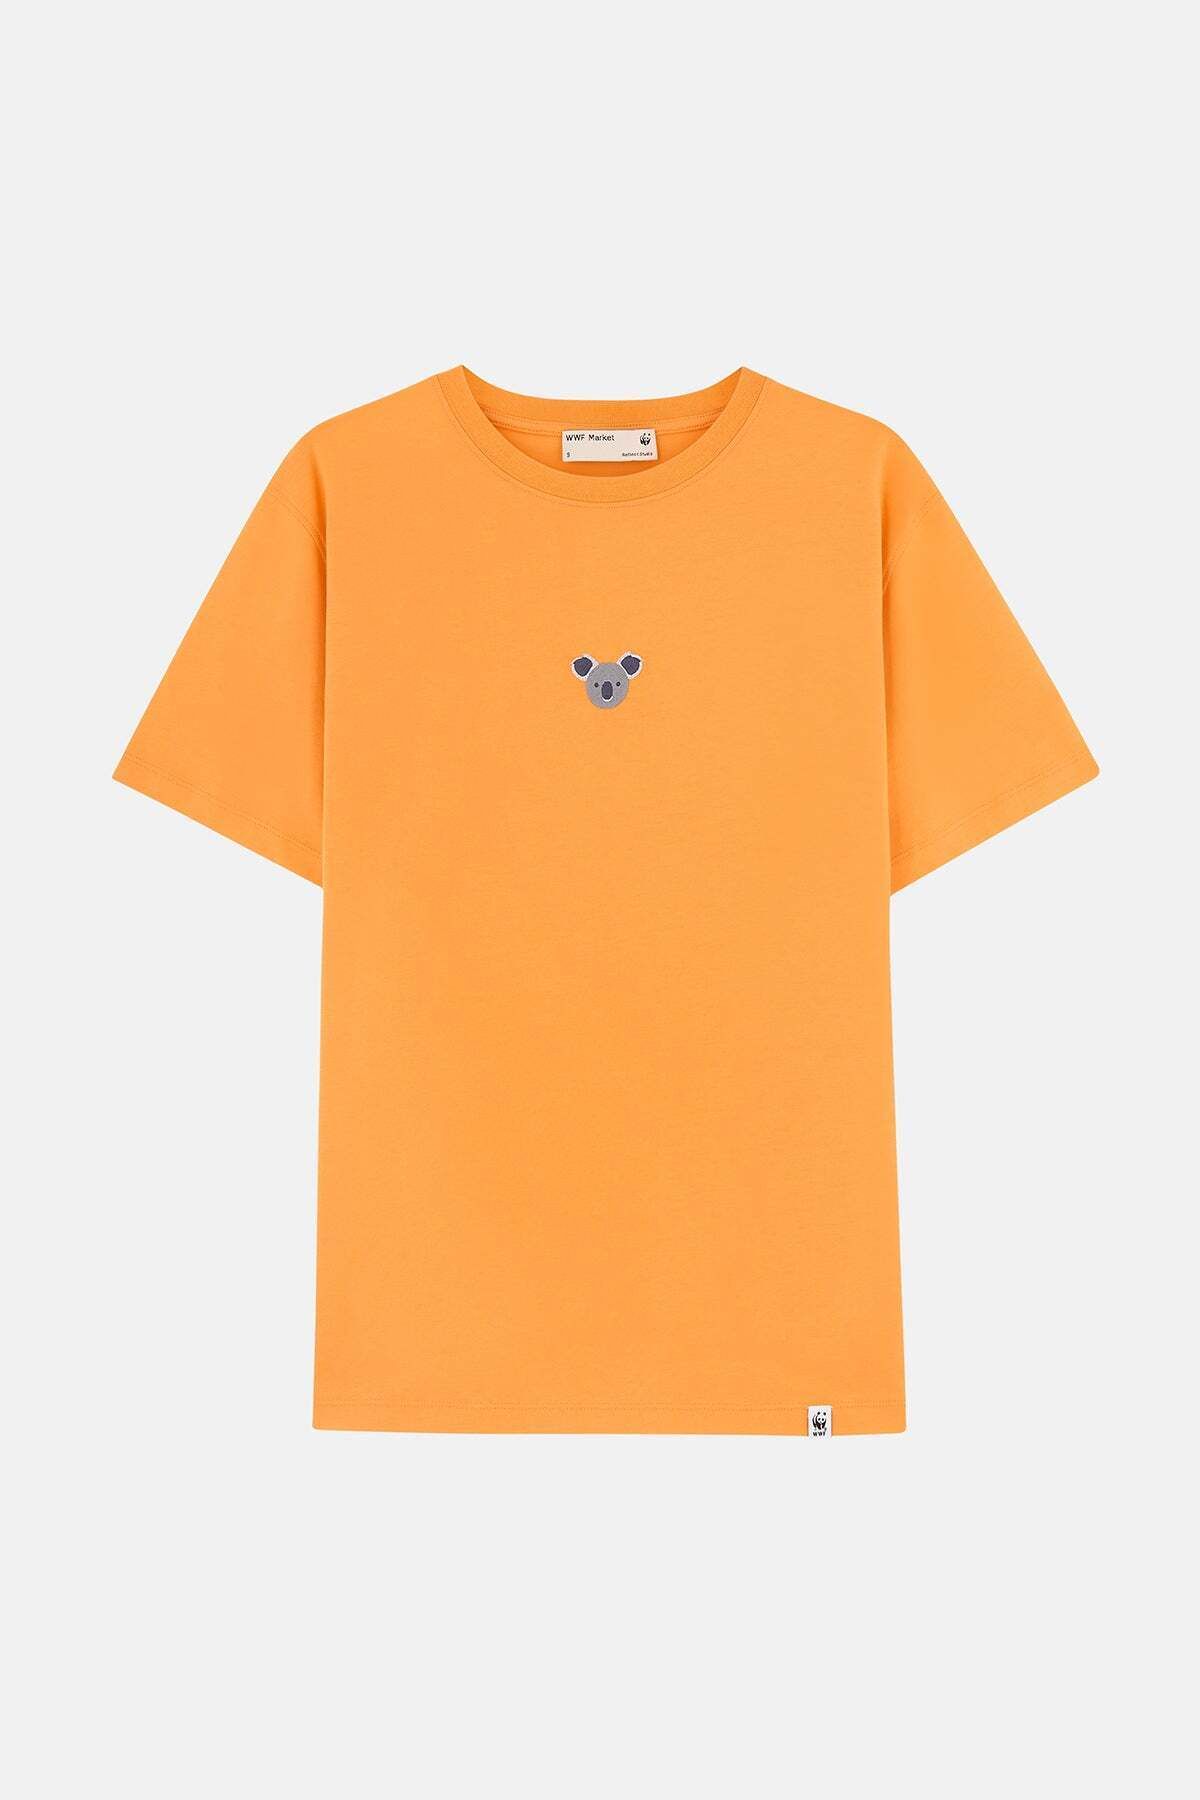 WWF Market Koala Supreme T-shirt - Şeftali Rengi